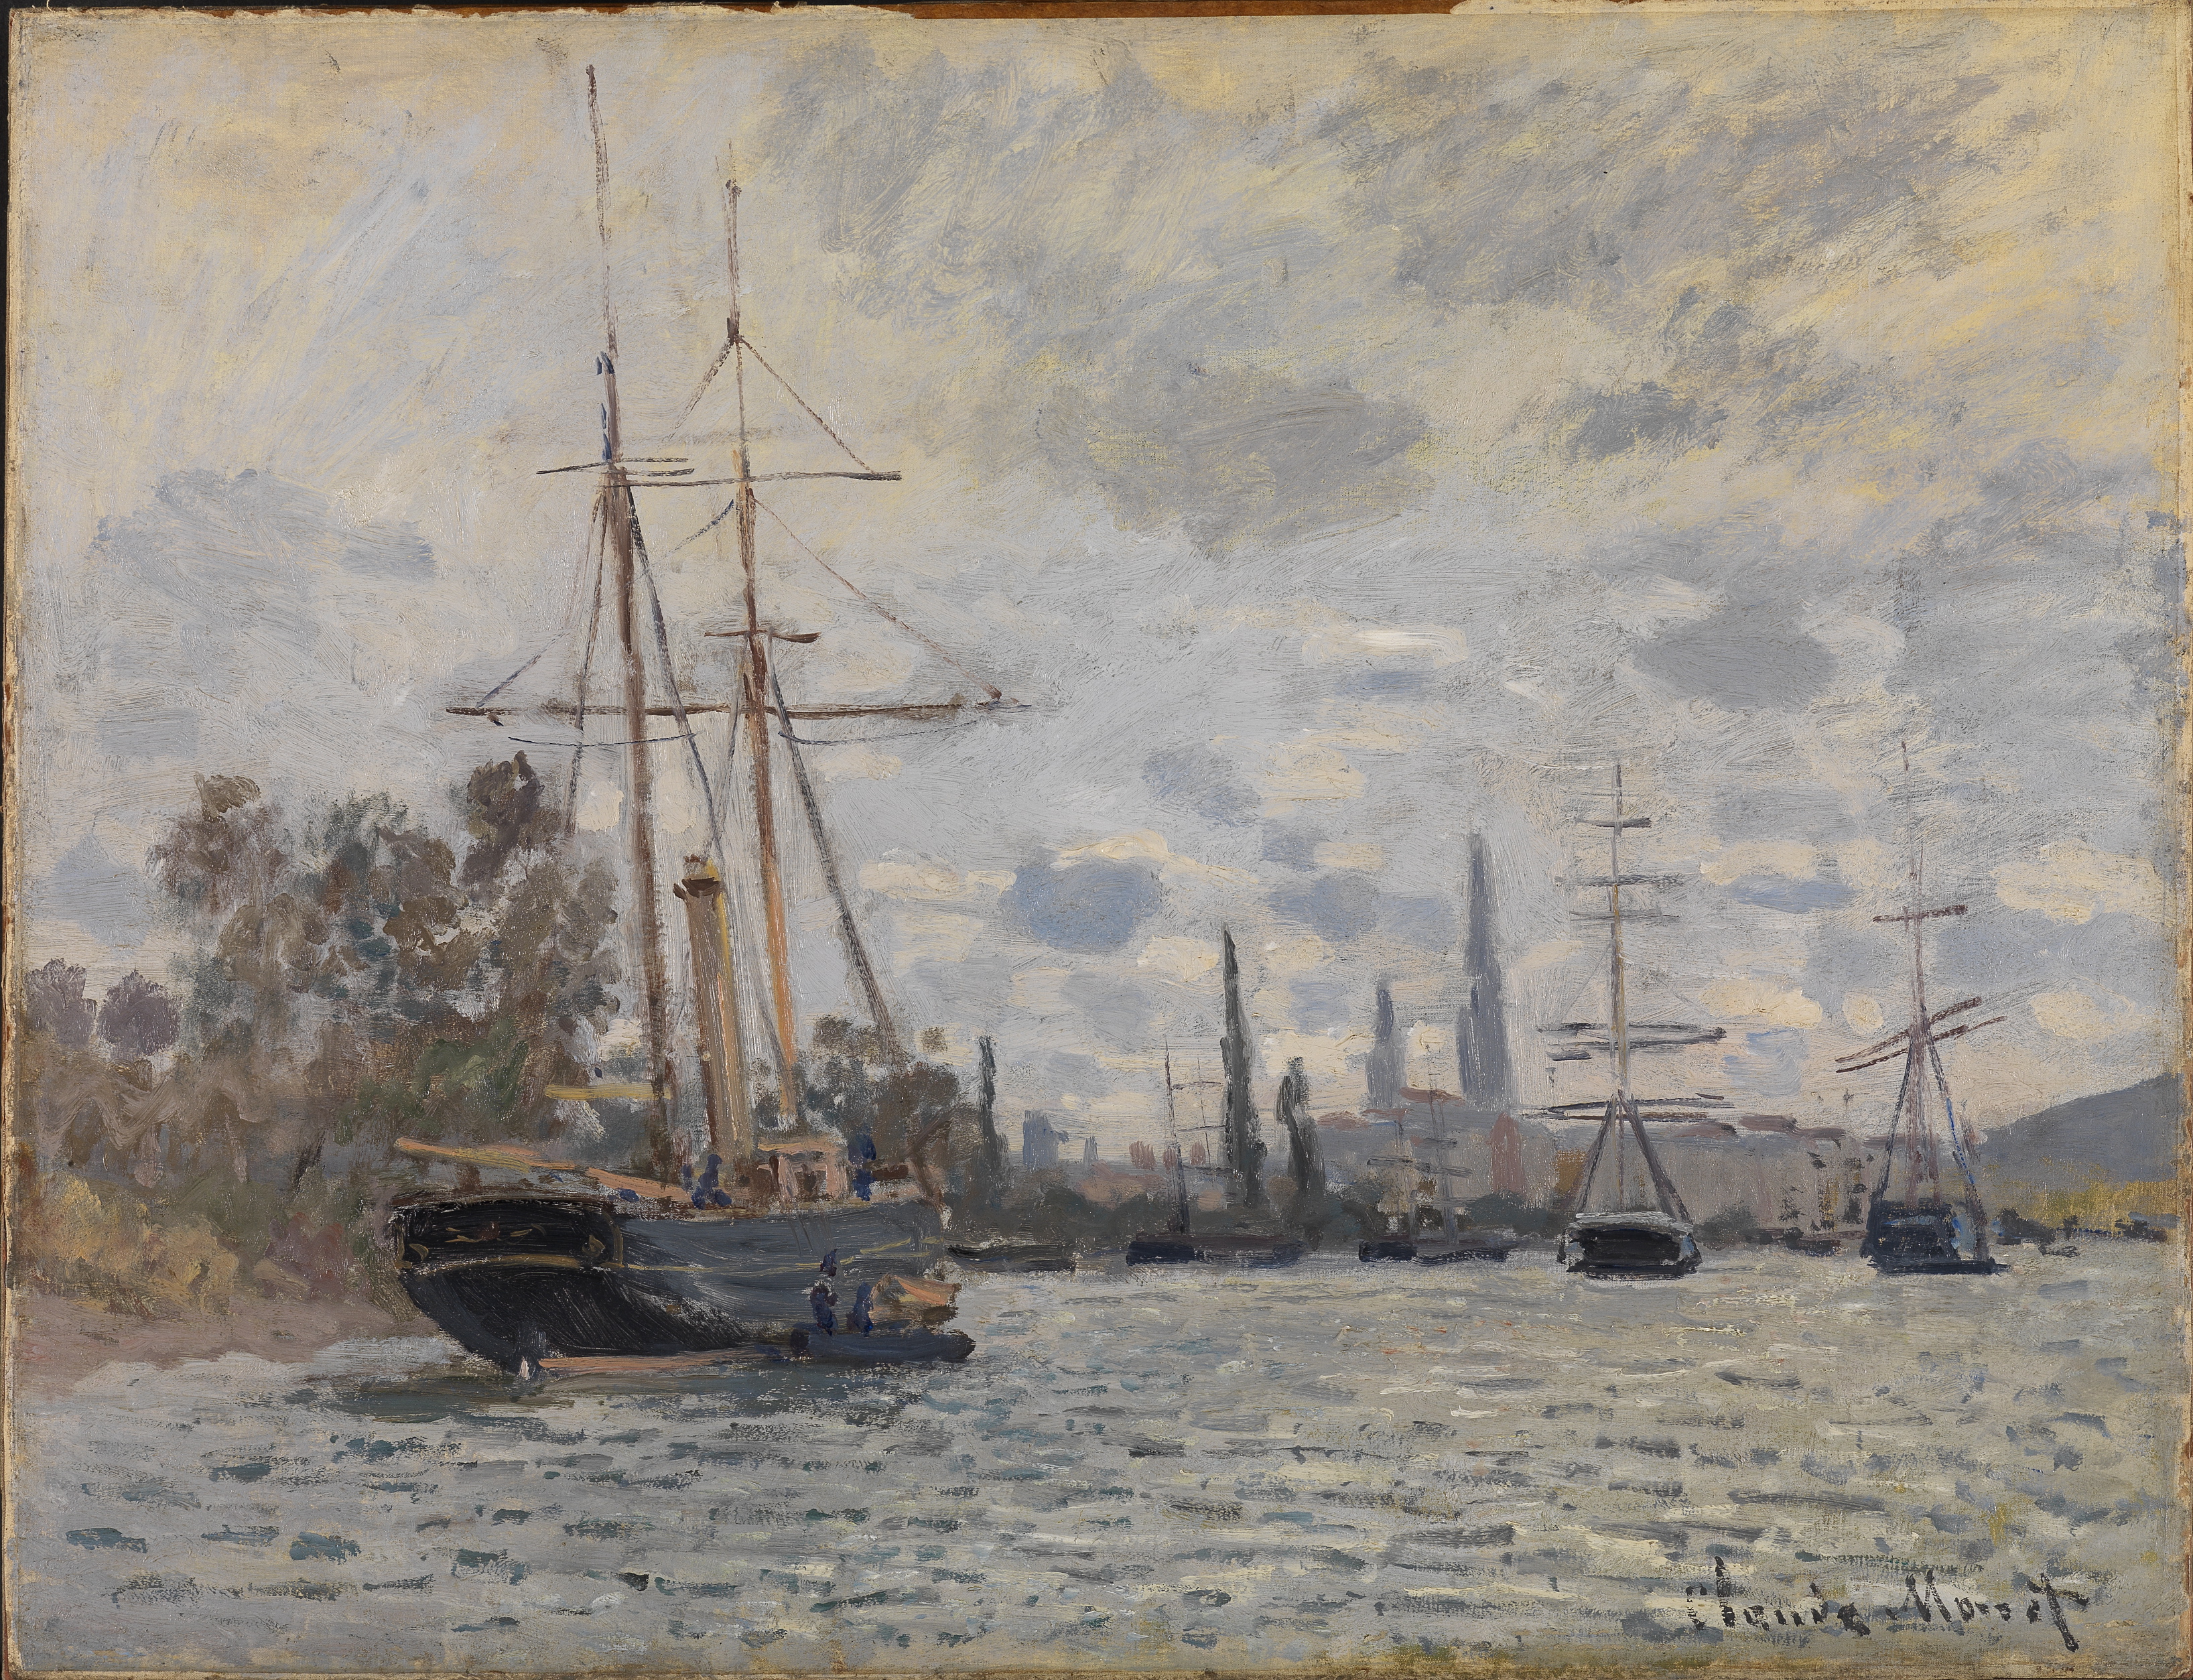 De Seine bij Rouen by Claude Monet - 1872 - 50,5 x 65,5 cm Staatliche Kunsthalle Karlsruhe